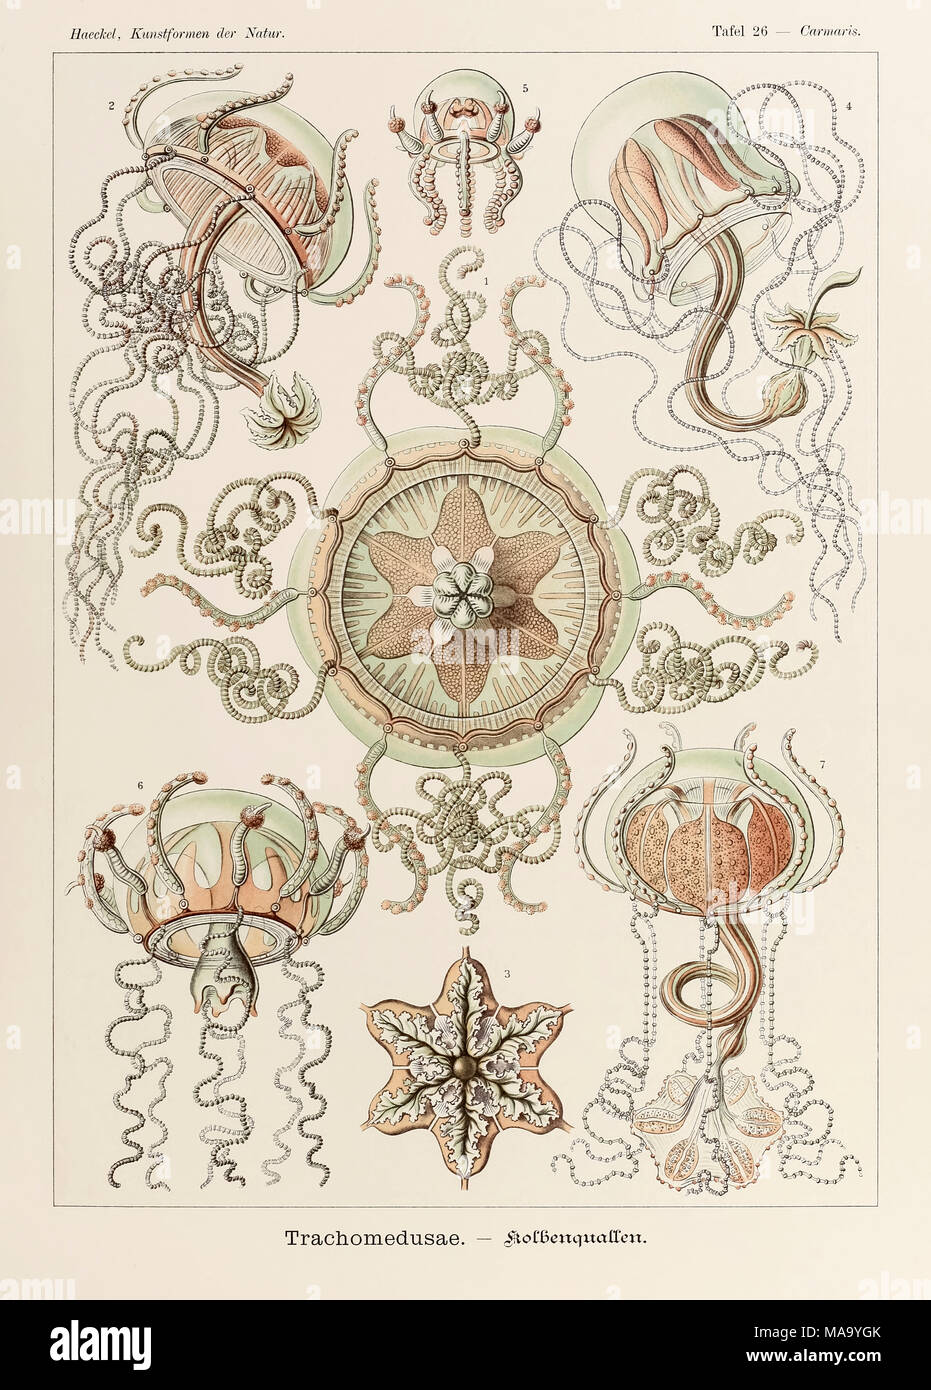 La piastra 26 Carmaris Trachomedusae da 'Kunstformen der Natur" (forme d'Arte nella Natura) illustrato da Ernst Haeckel (1834-1919). Vedere ulteriori informazioni qui di seguito. Foto Stock